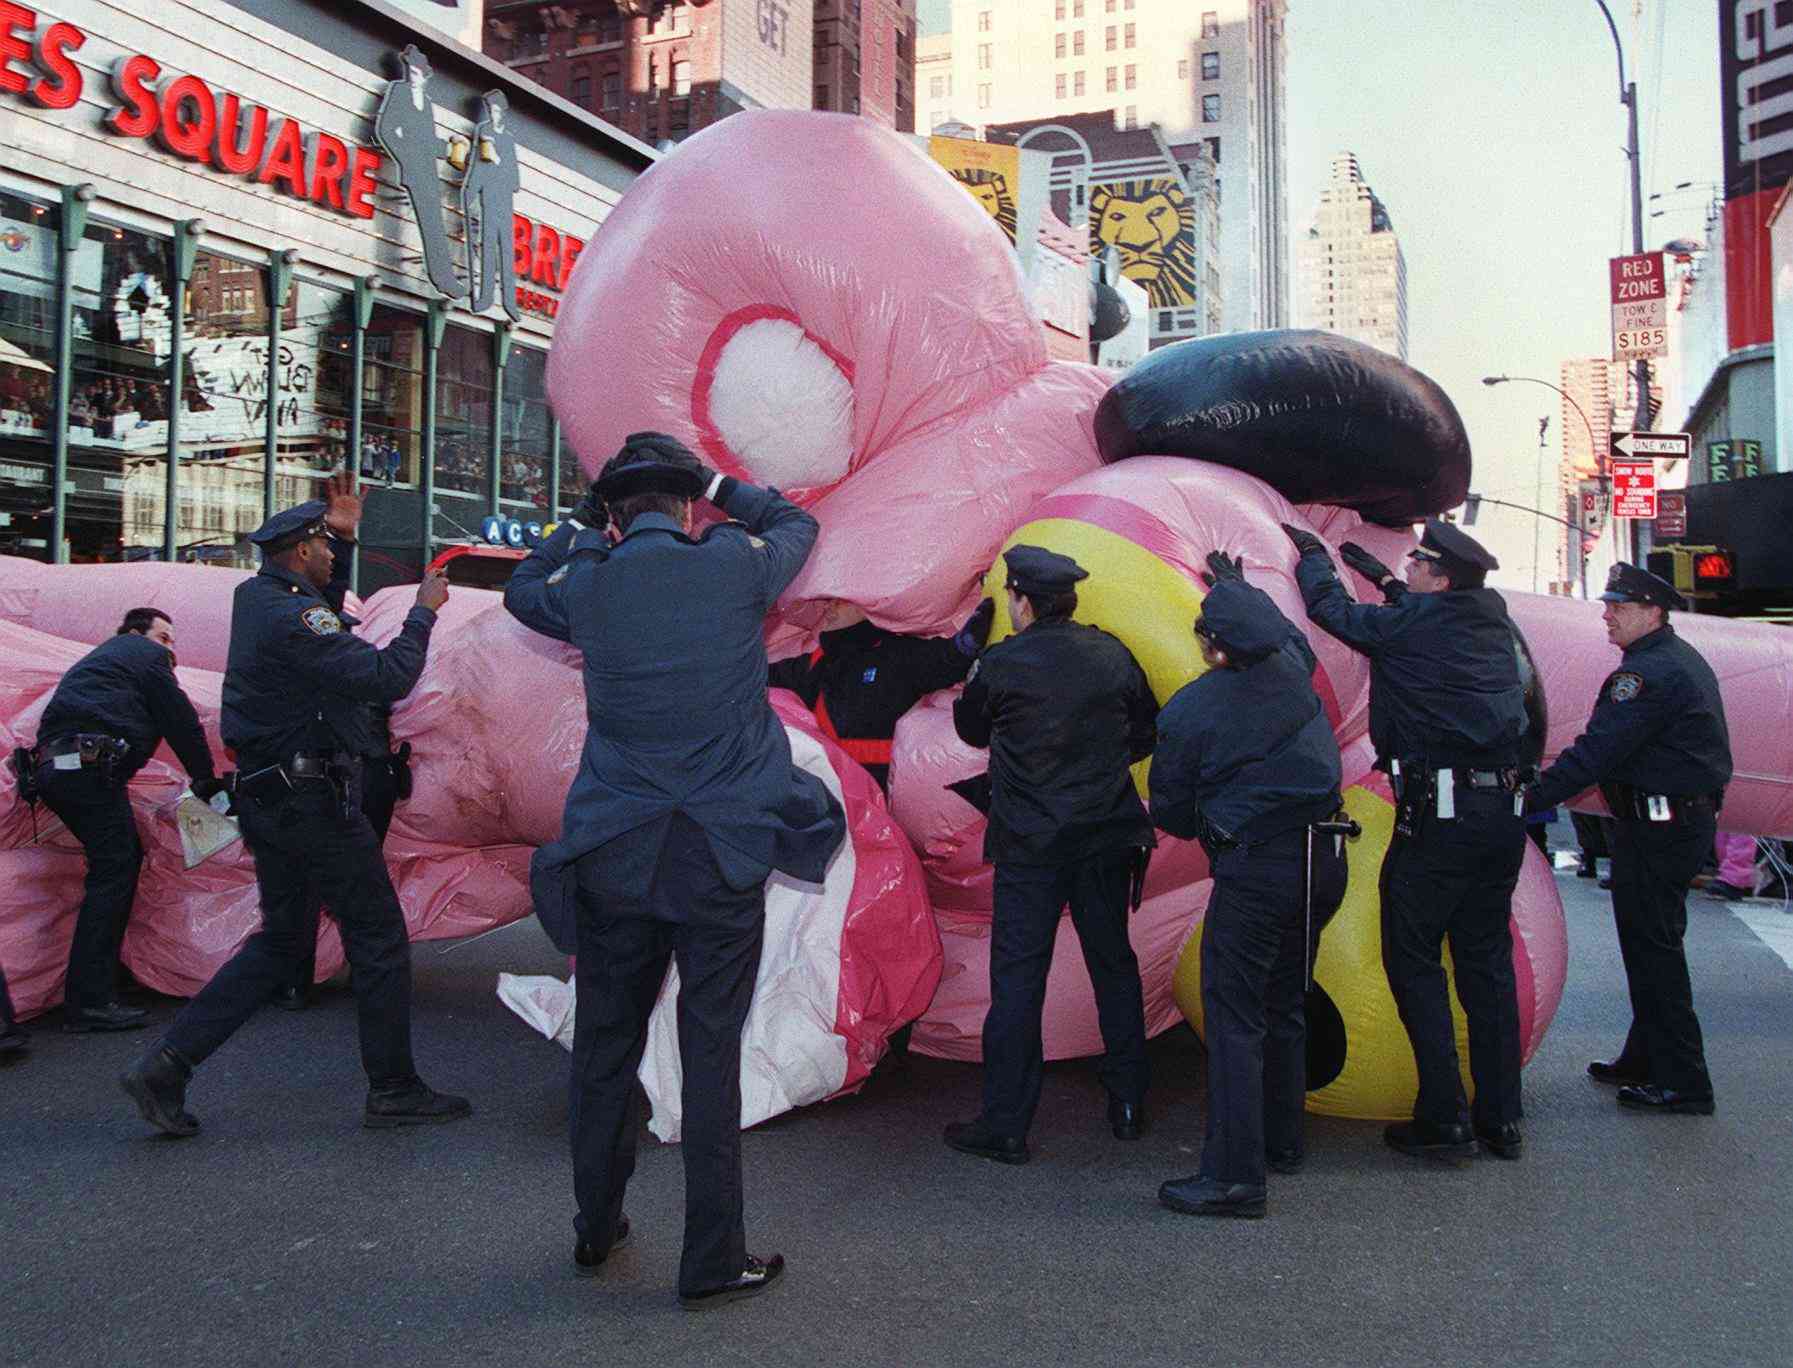 la policía rescatando el globo de la Pantera Rosa en el desfile de Macy's